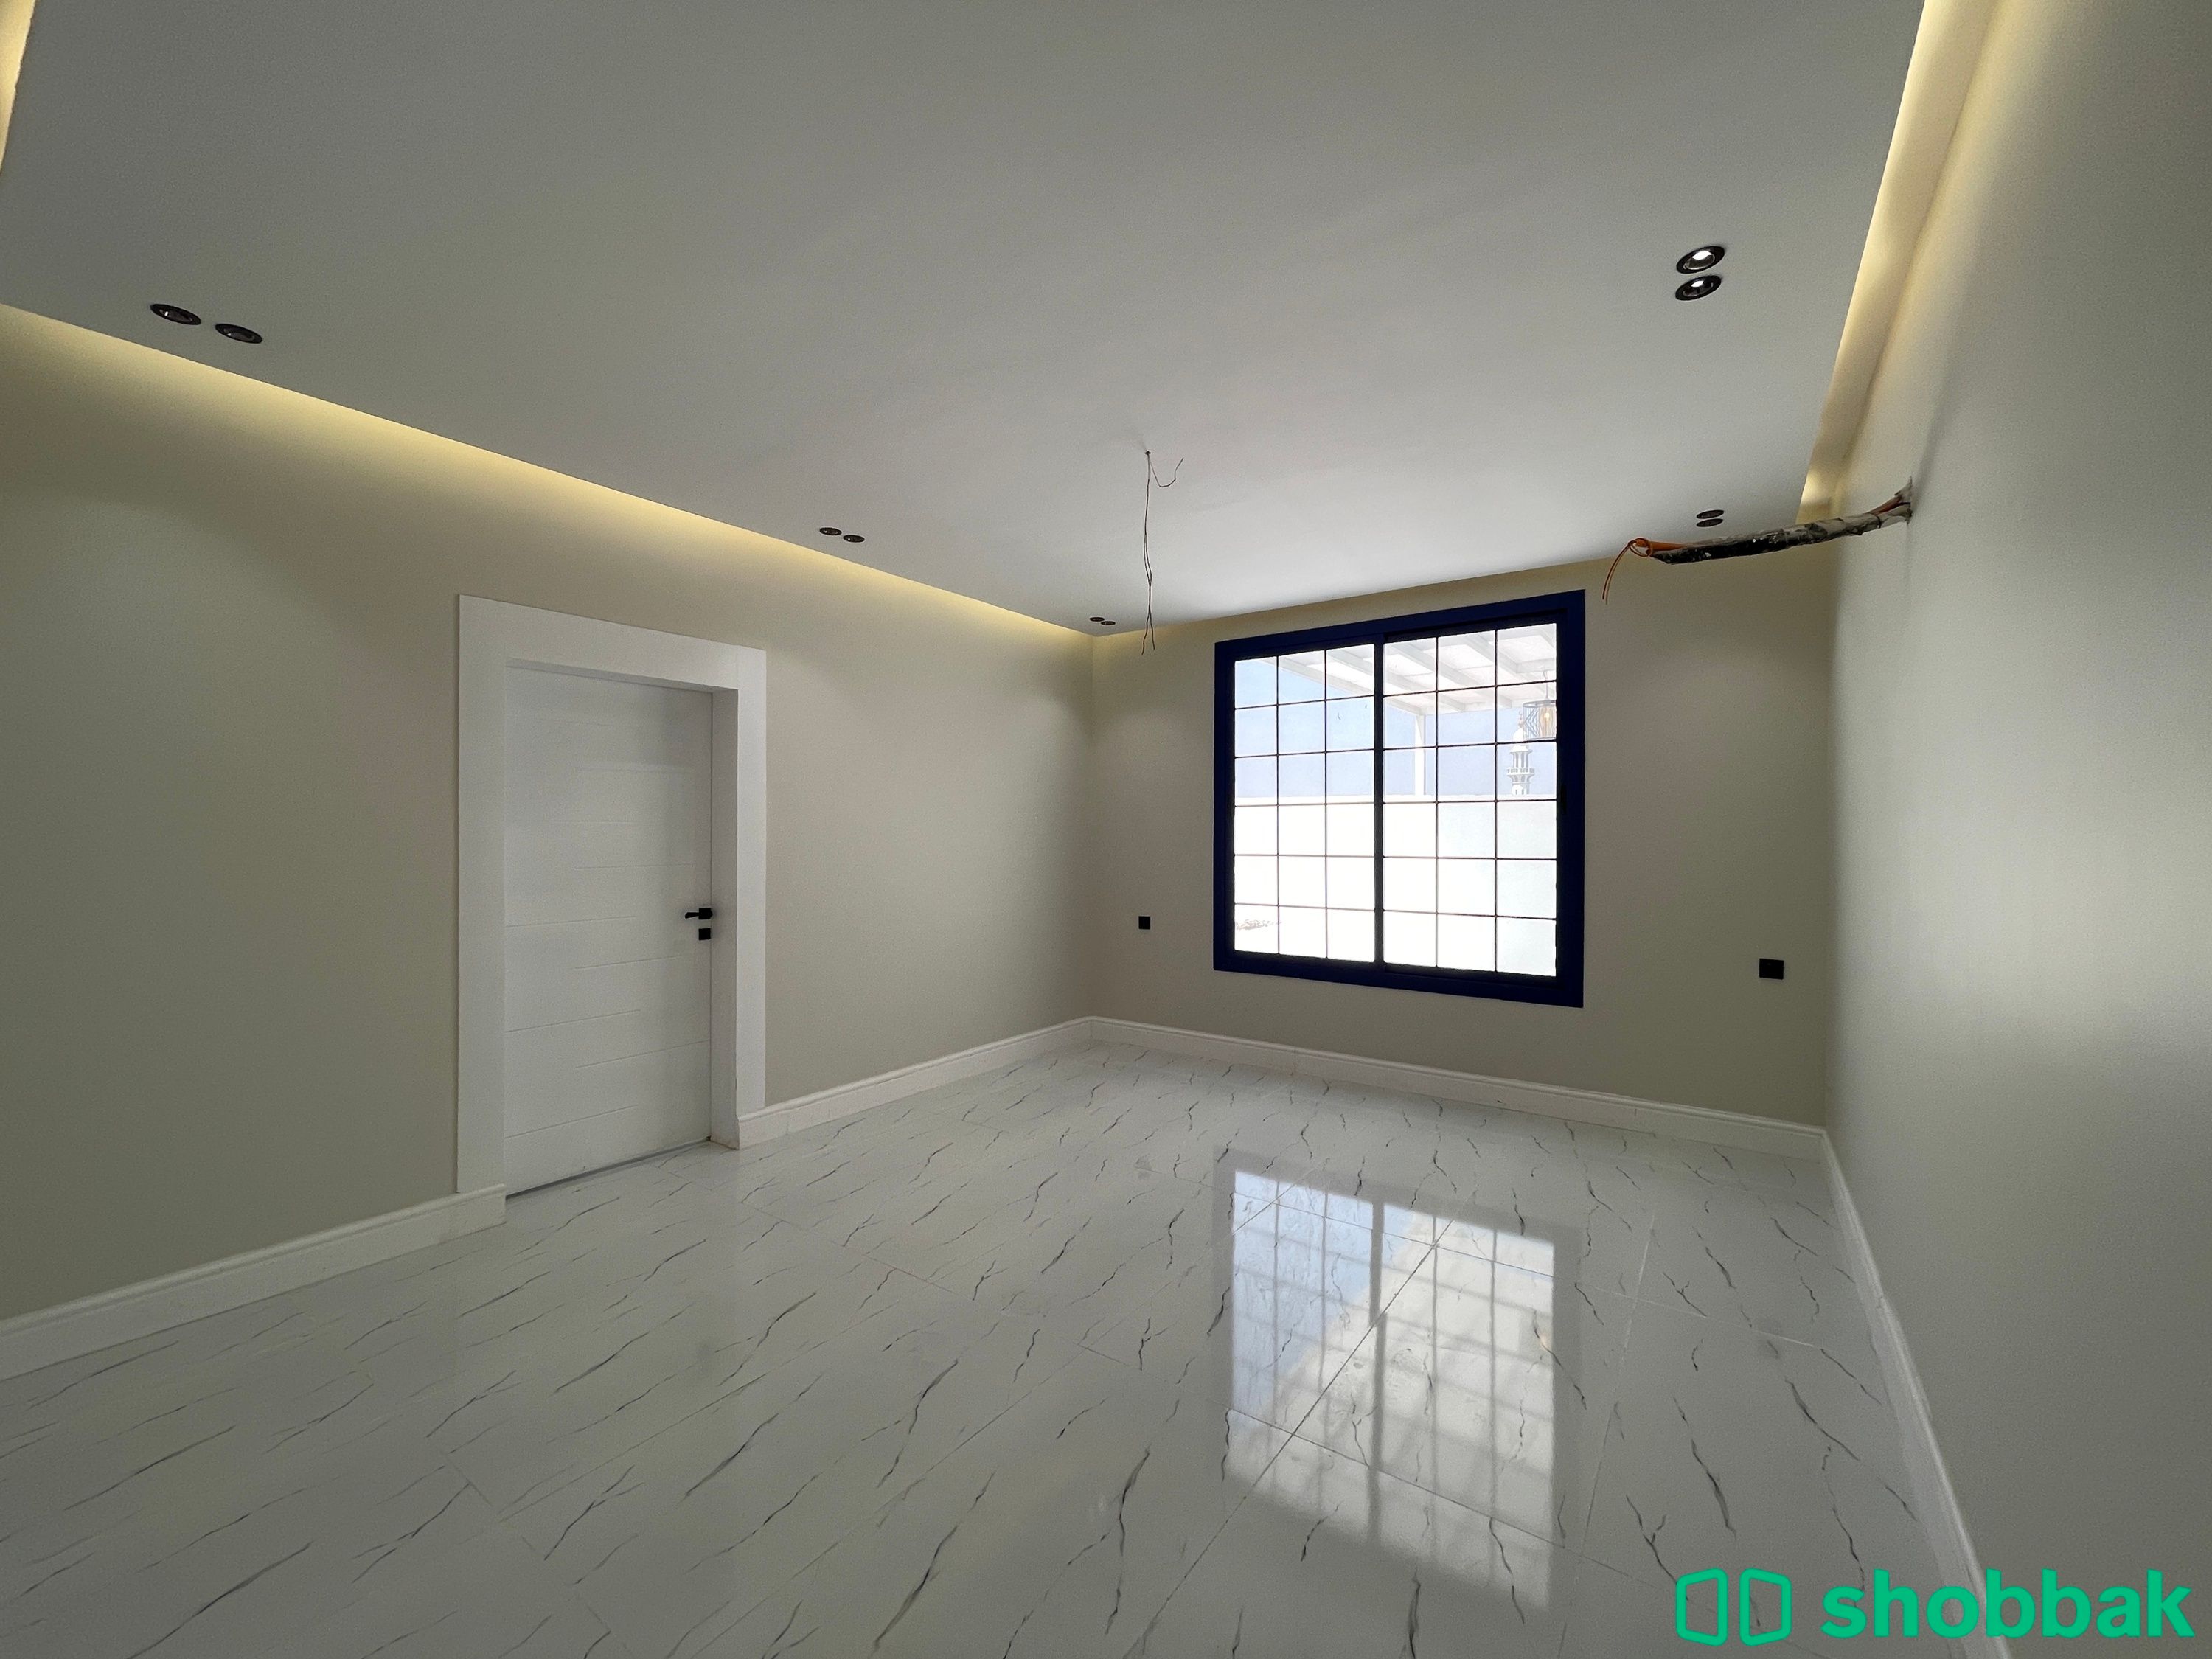 شقة 4 غرف بحي السلامة جديدة جاهزة للسكن تقبل البنك بسعر مغري Shobbak Saudi Arabia